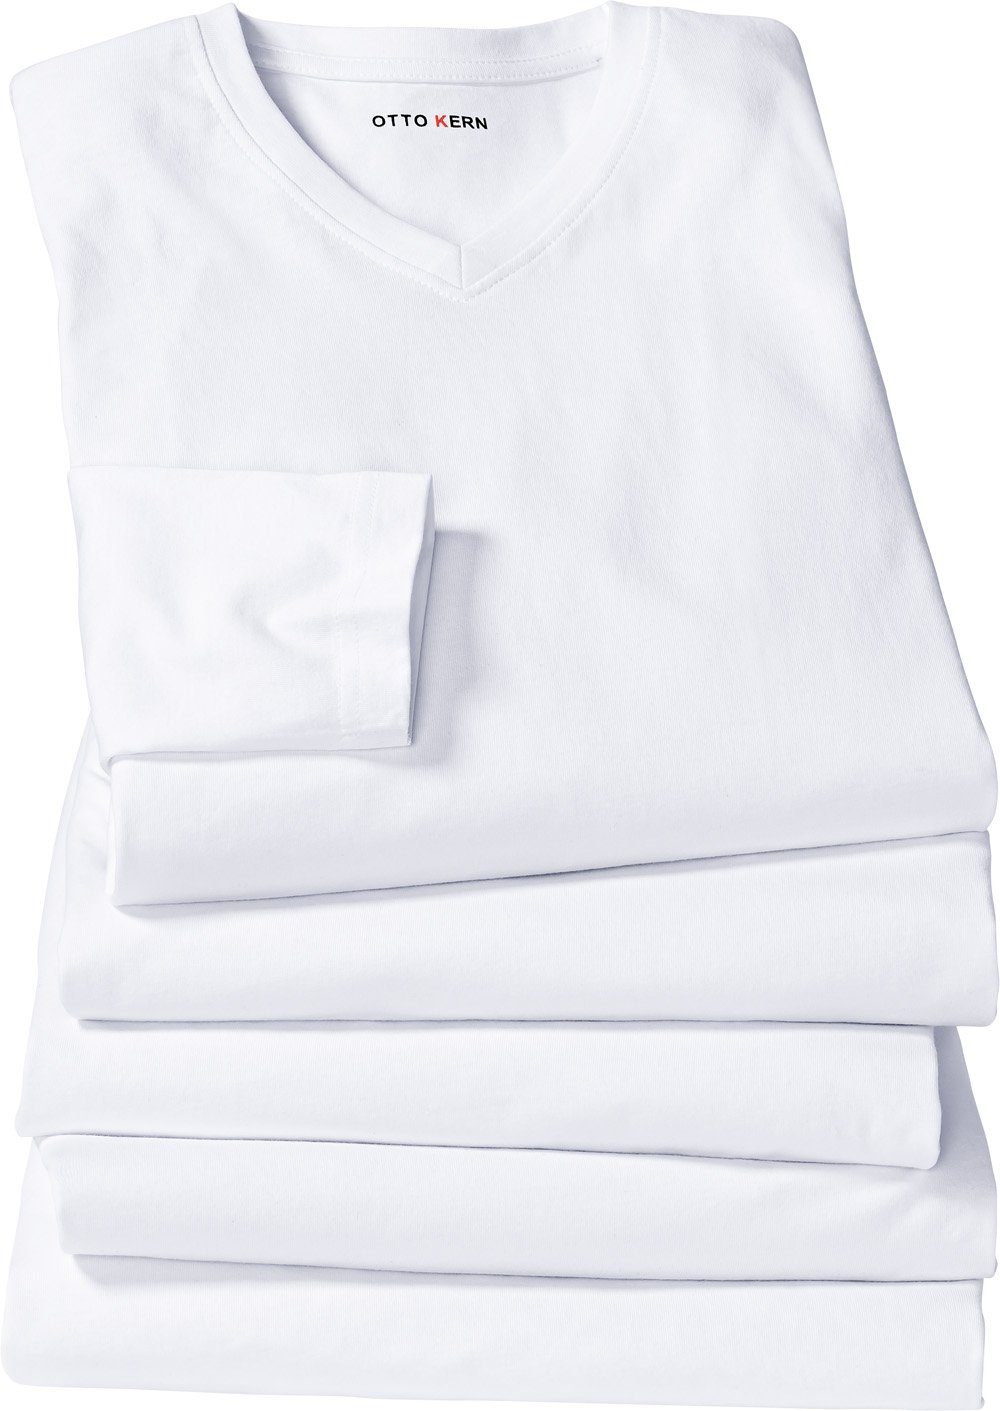 Langarmshirt Kern Otto (5er-Pack) 100% hautsympathischer Kern weiß Baumwolle aus und formstabiler